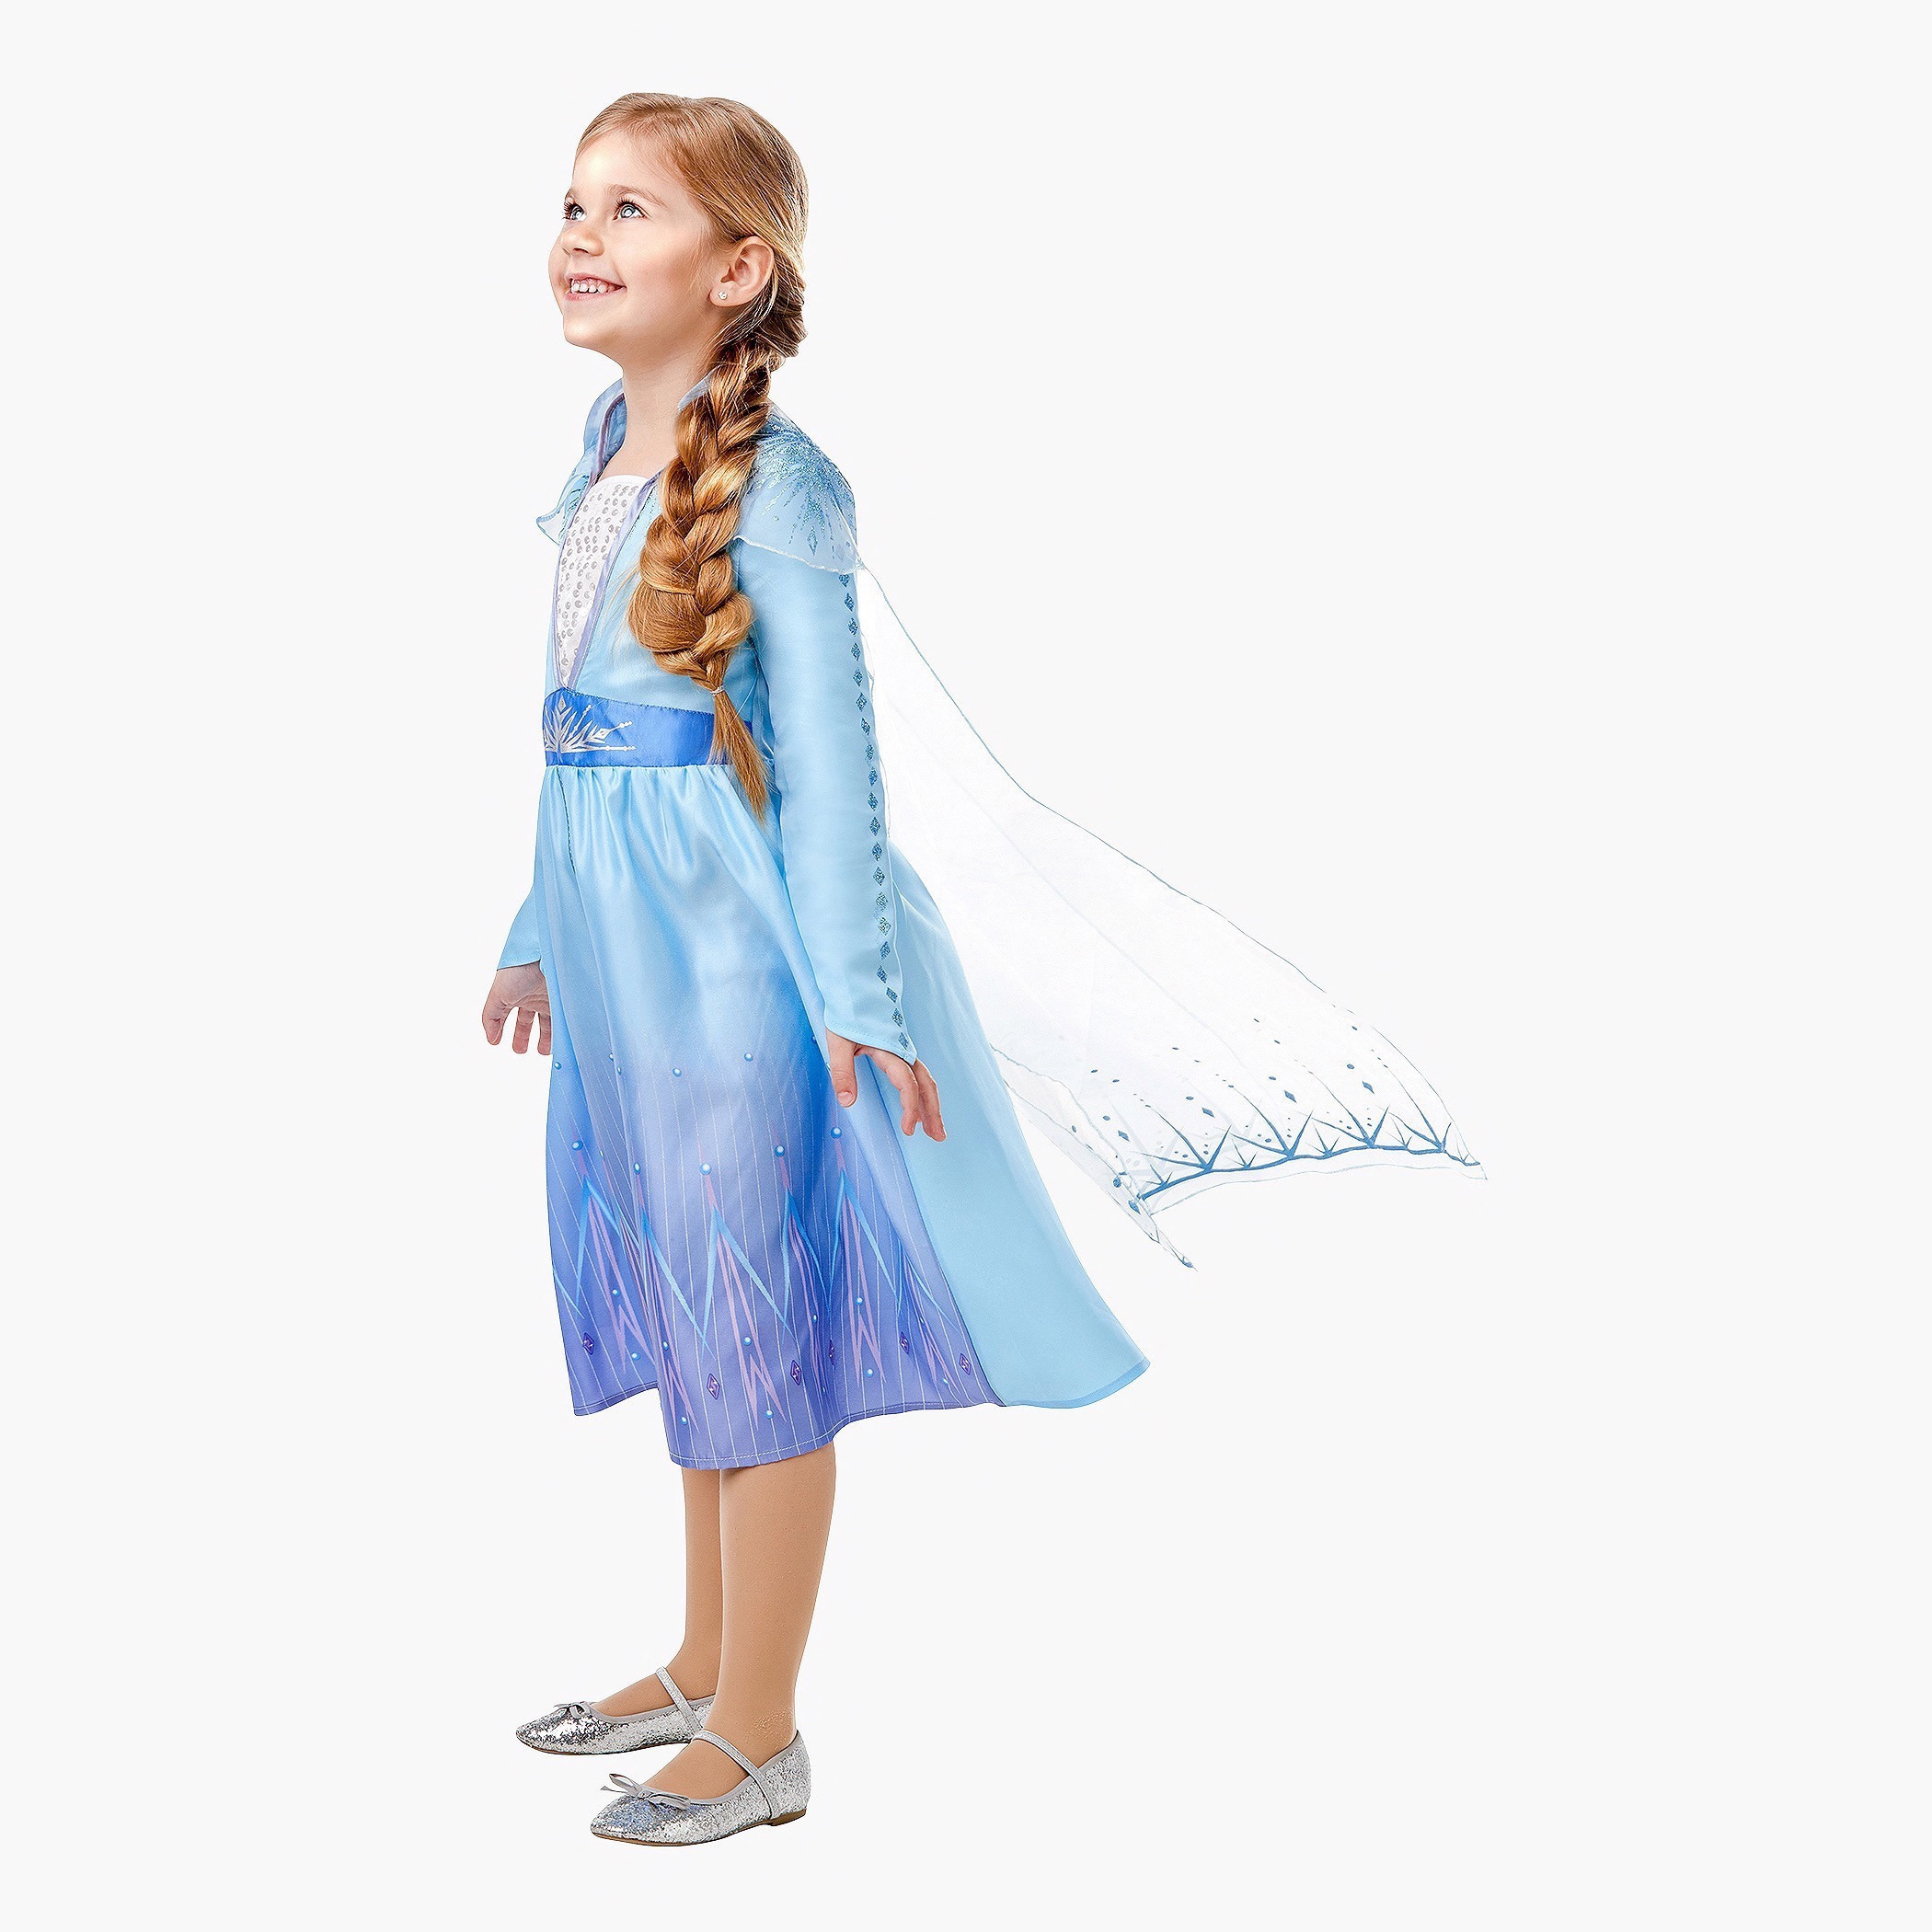 Frozen Costumes | Frozen Dress Up | Costume Super Centre